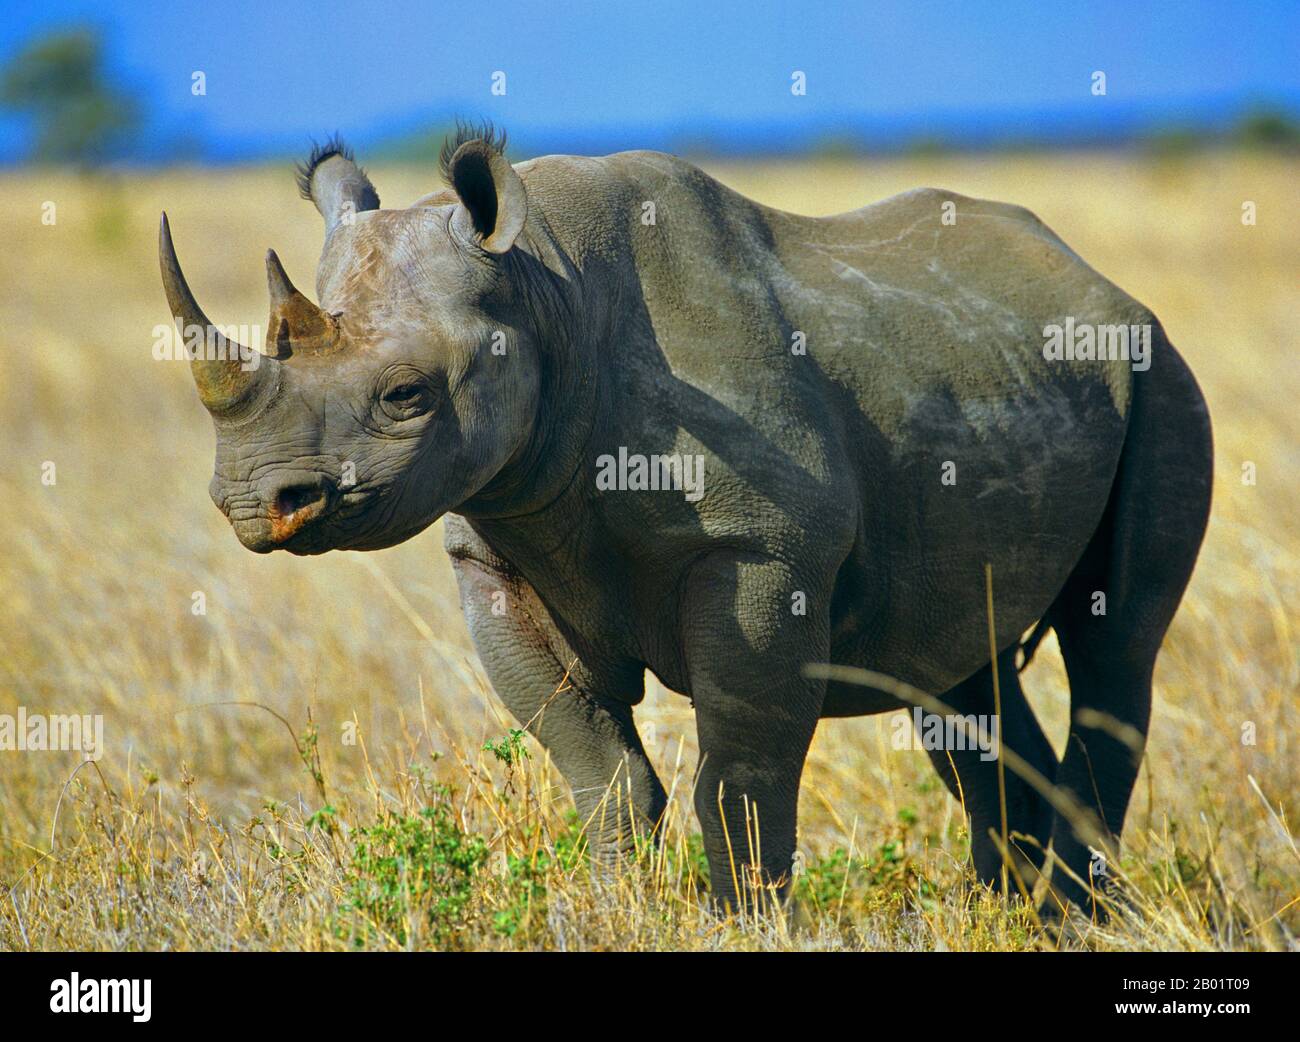 Rinocerontes negros, rinocerontes enganchados, hojear rinocerontes (Diceros bicornis), de pie en la sabana, vista lateral, África Foto de stock